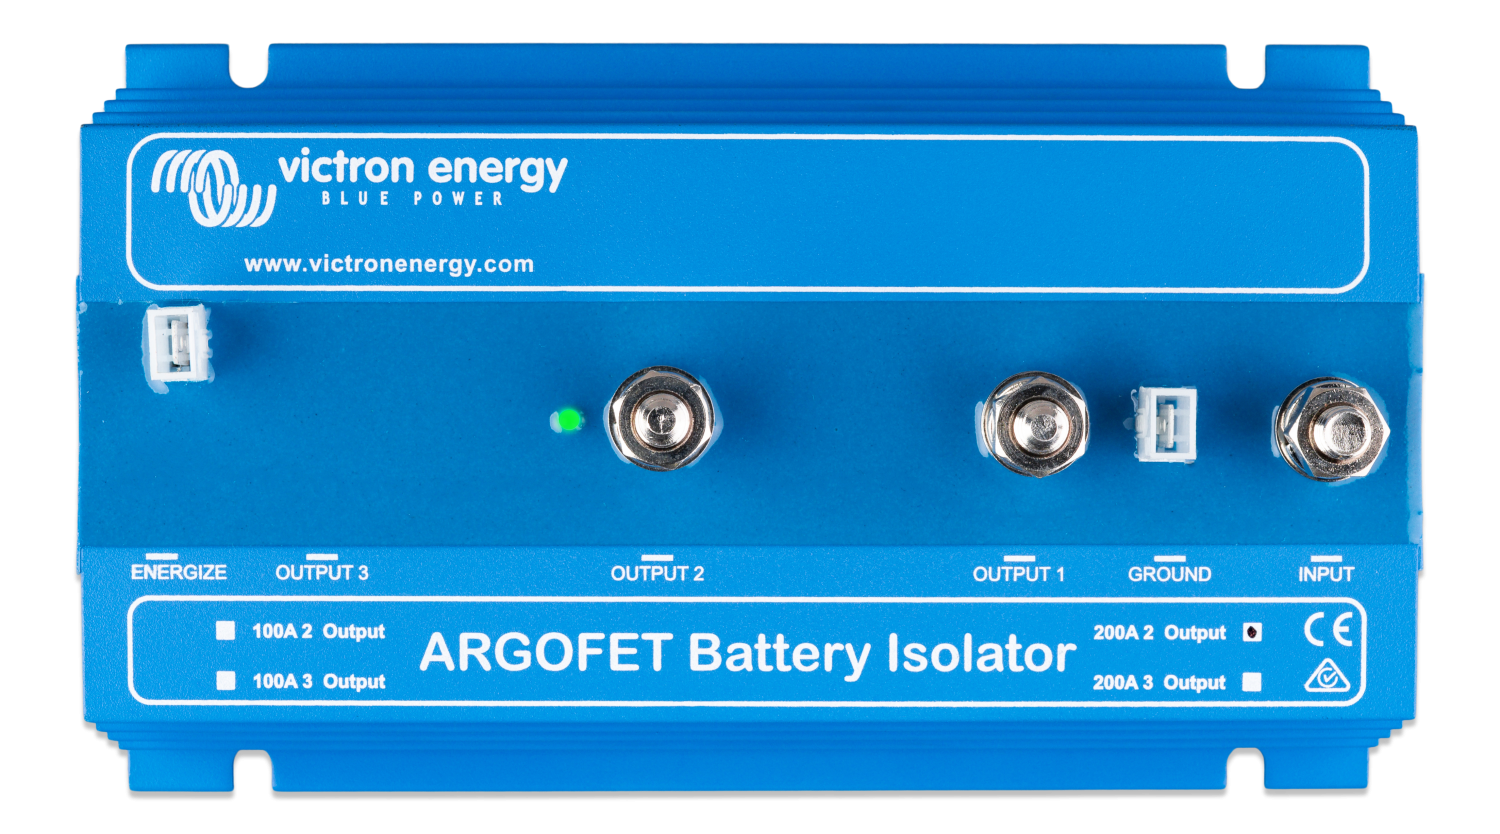 laadstroomverdeler-200-2-2-batteries-100-ah-argofet200-2